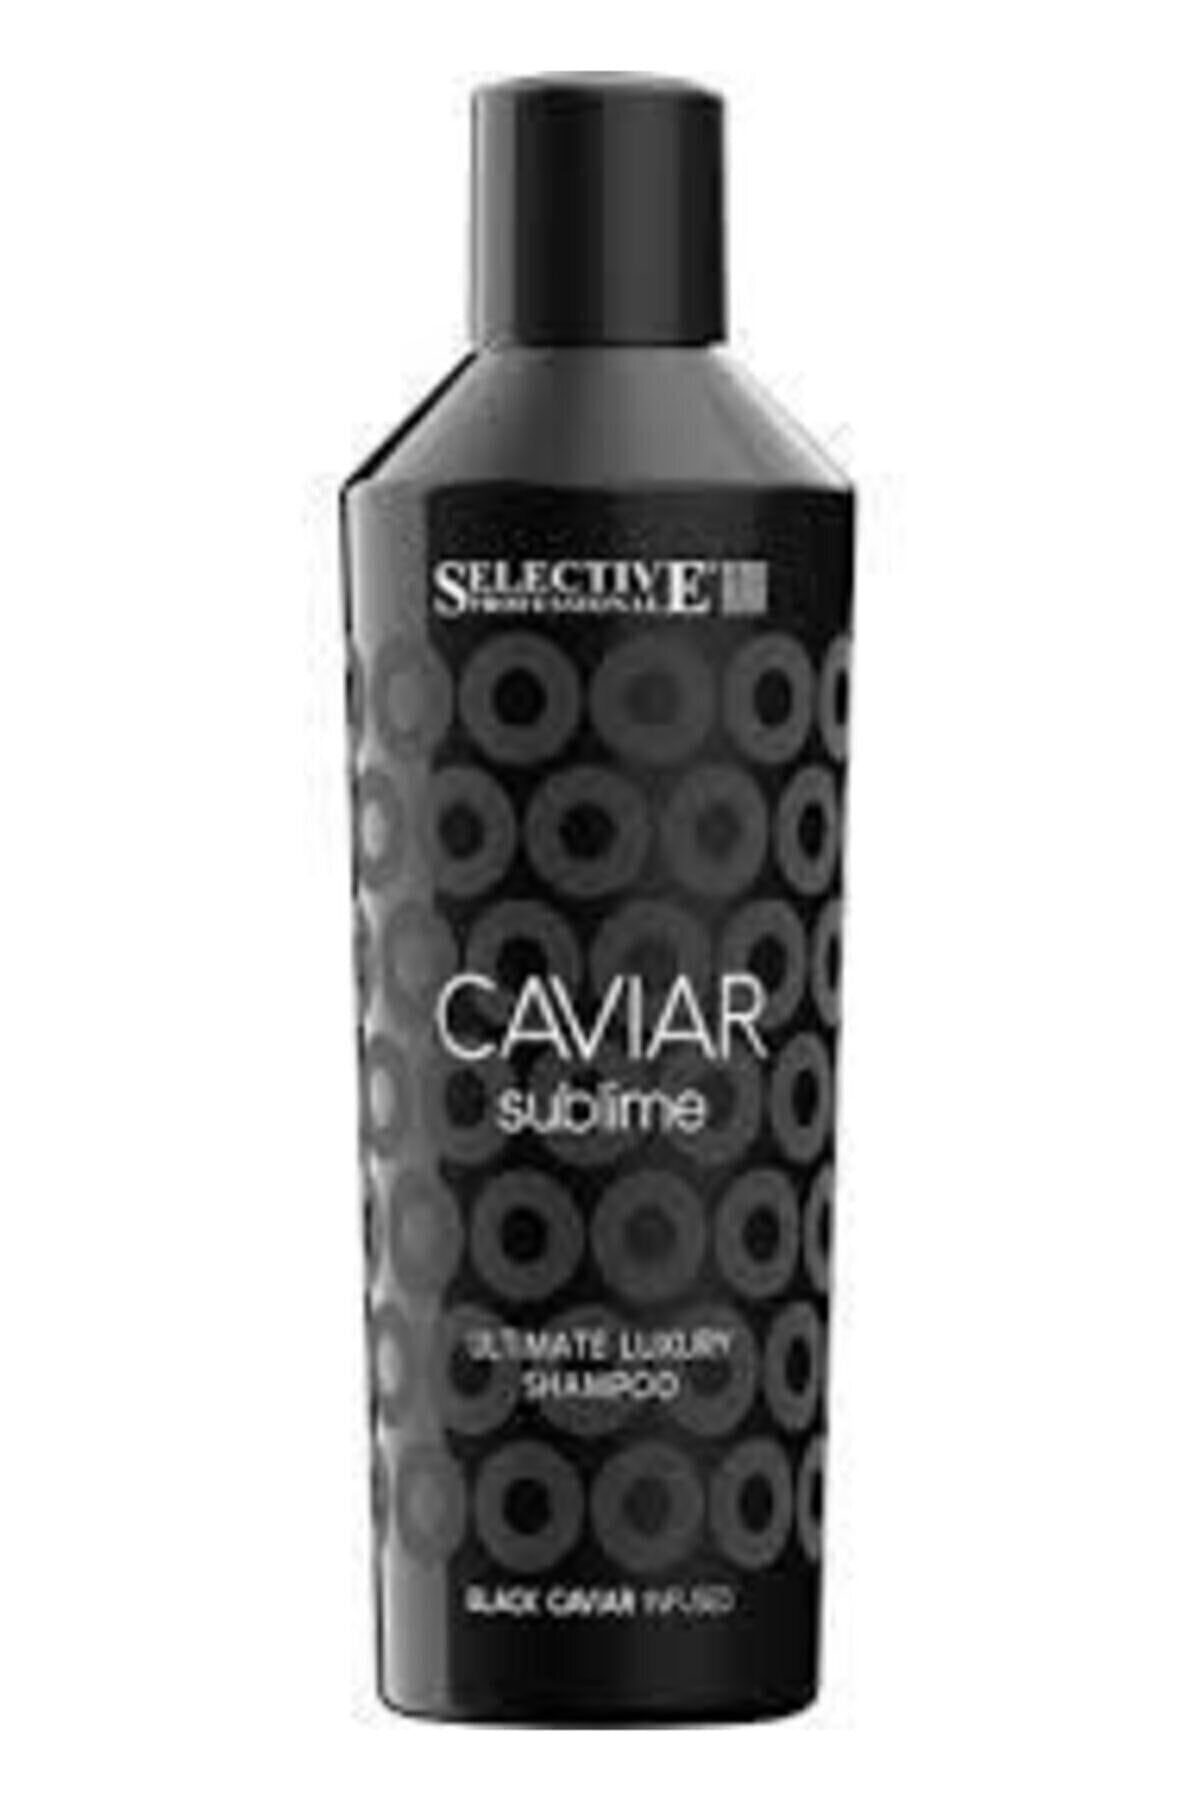 Selective Caviar Sublime Ultimate Luxury Şampuan Newonlıne.50